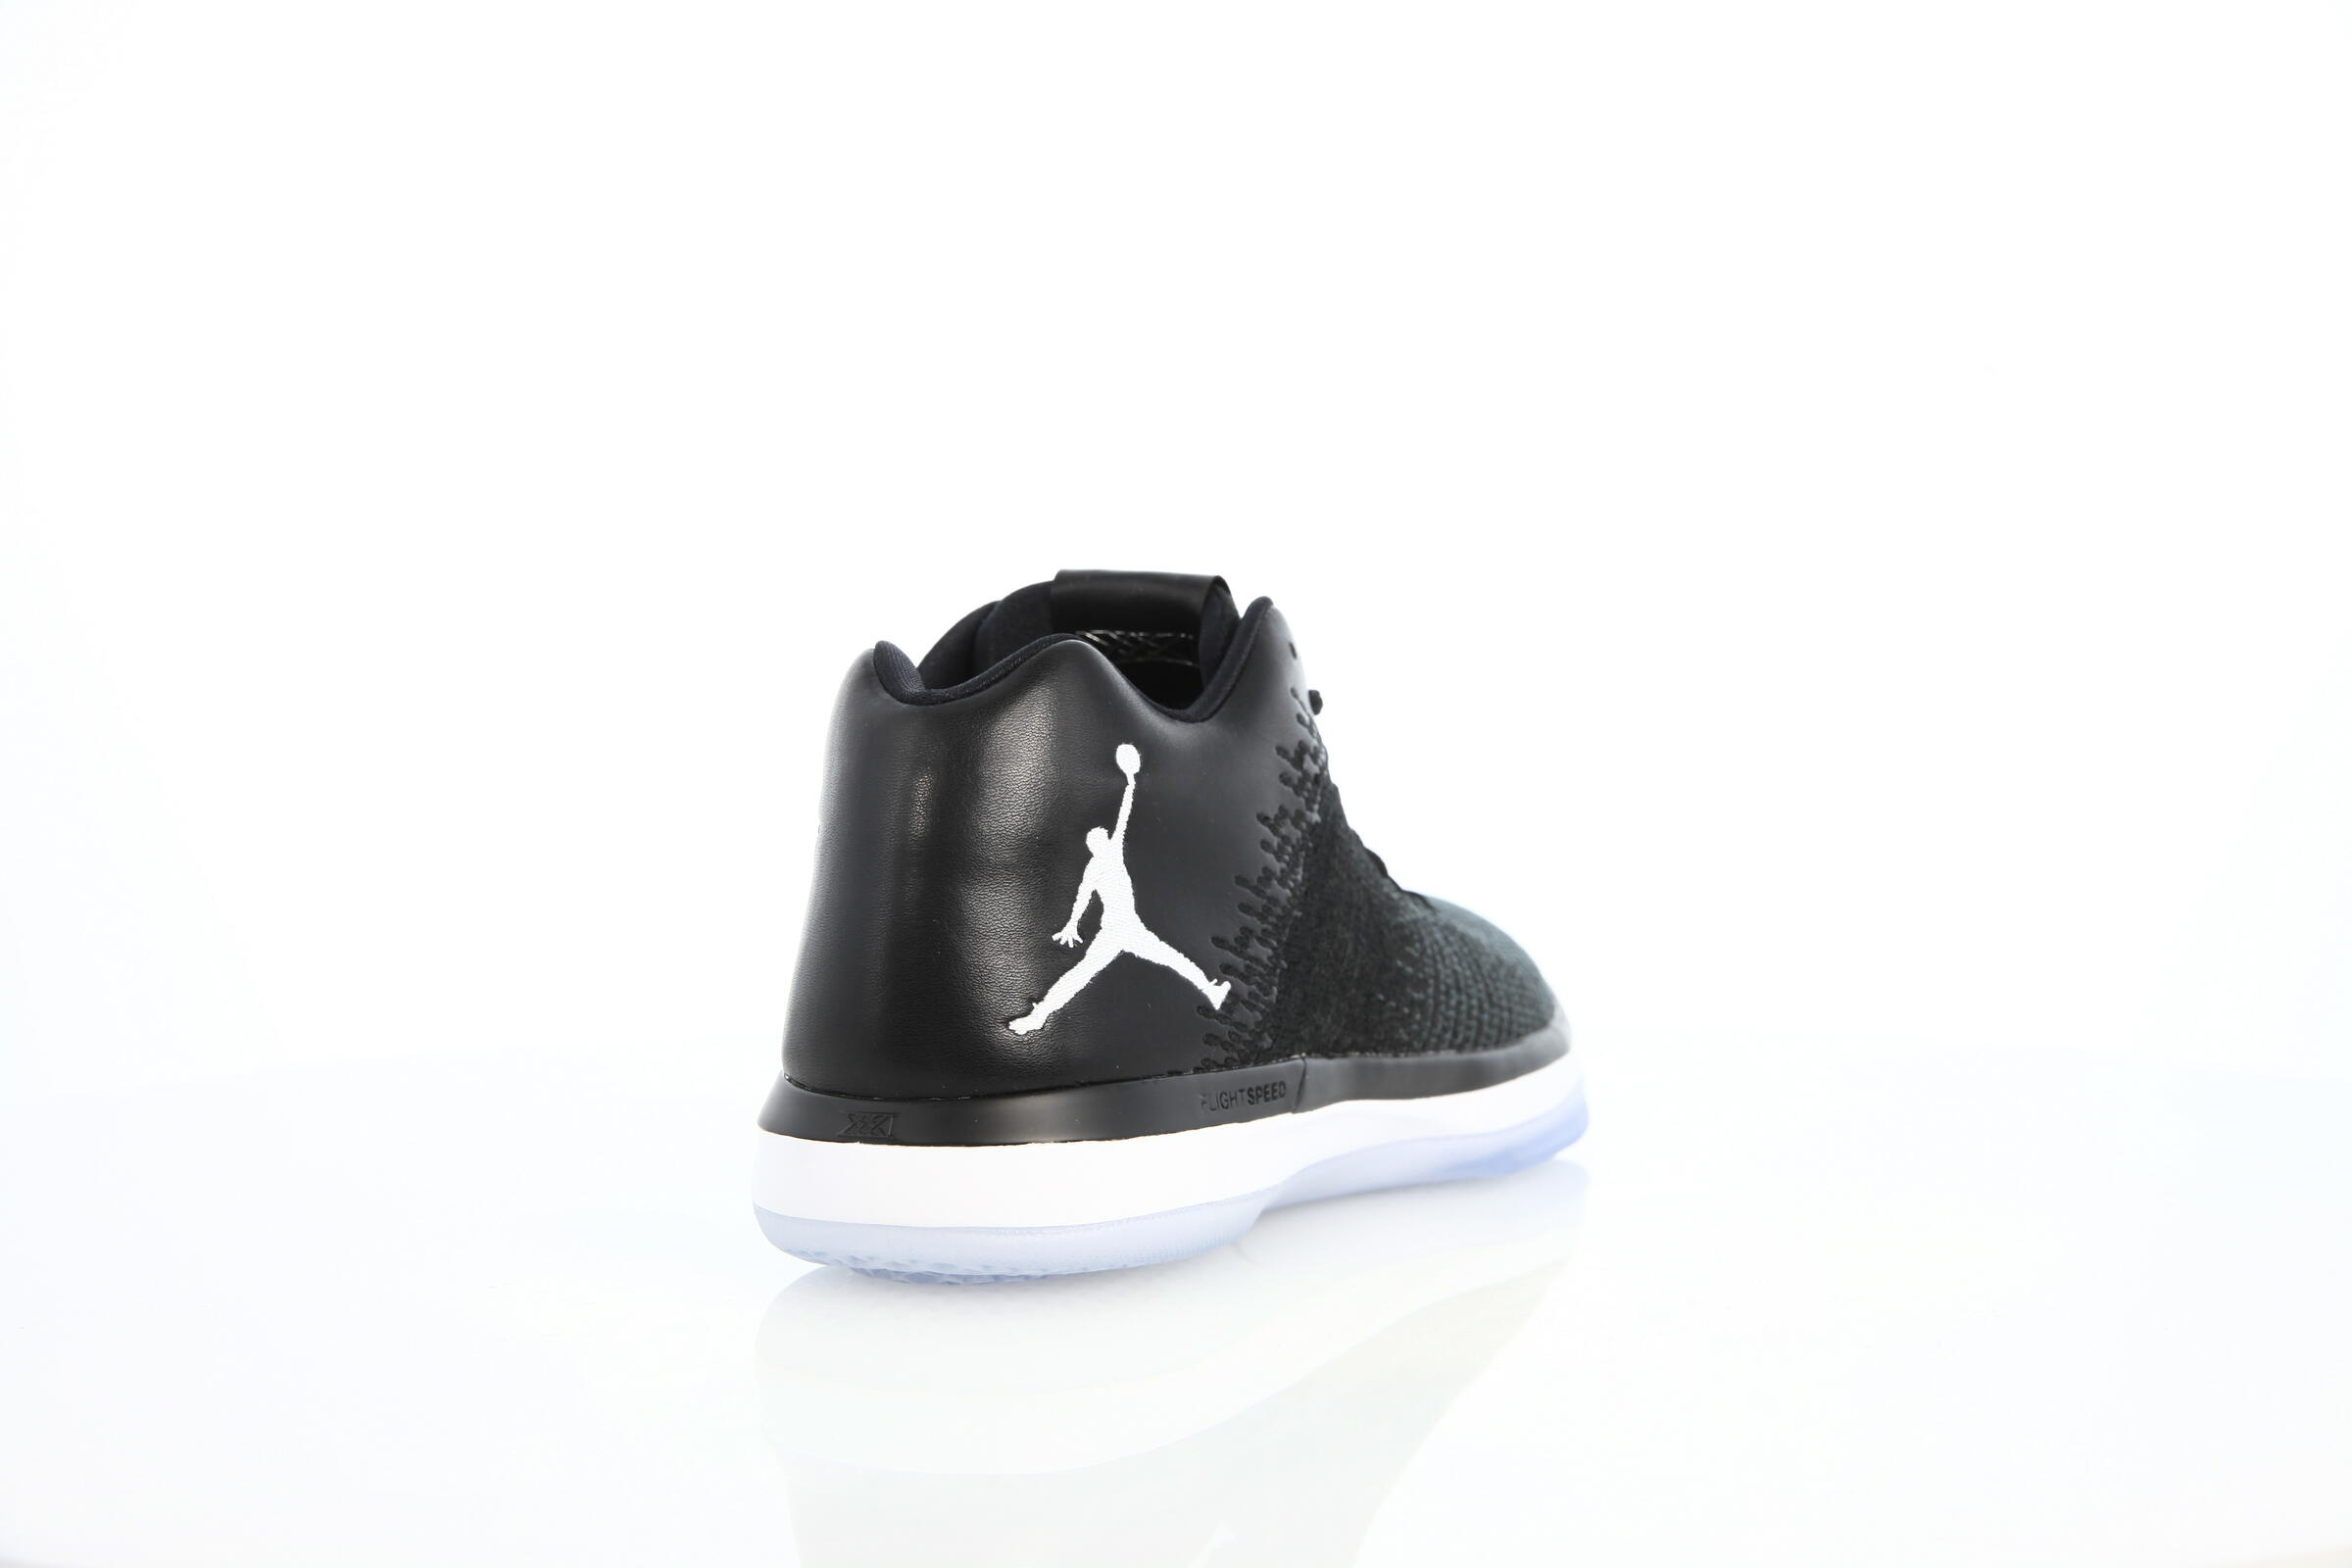 Air Jordan Xxxi Low "Black N White"